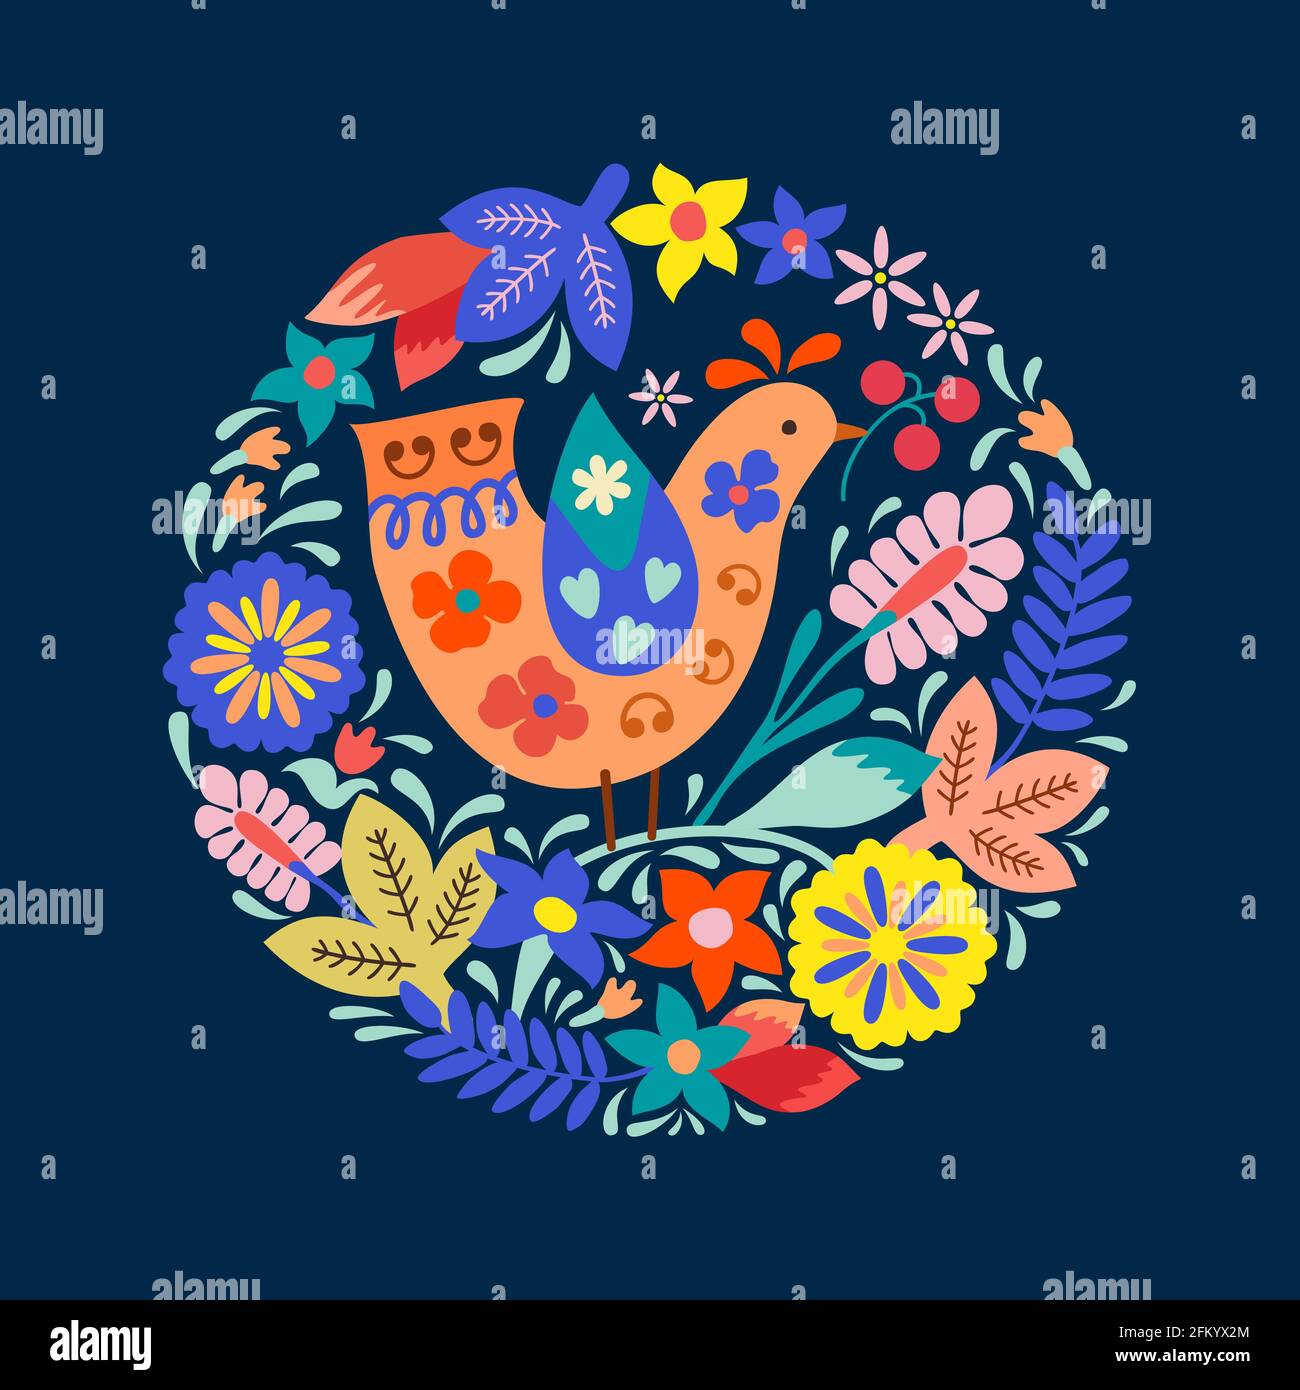 Le style folklorique mignon birdie avec des baies dans son bec et la couronne florale stylisée autour. Les couleurs énergisantes des couleurs pastel font penser à l'été. Illustration de Vecteur